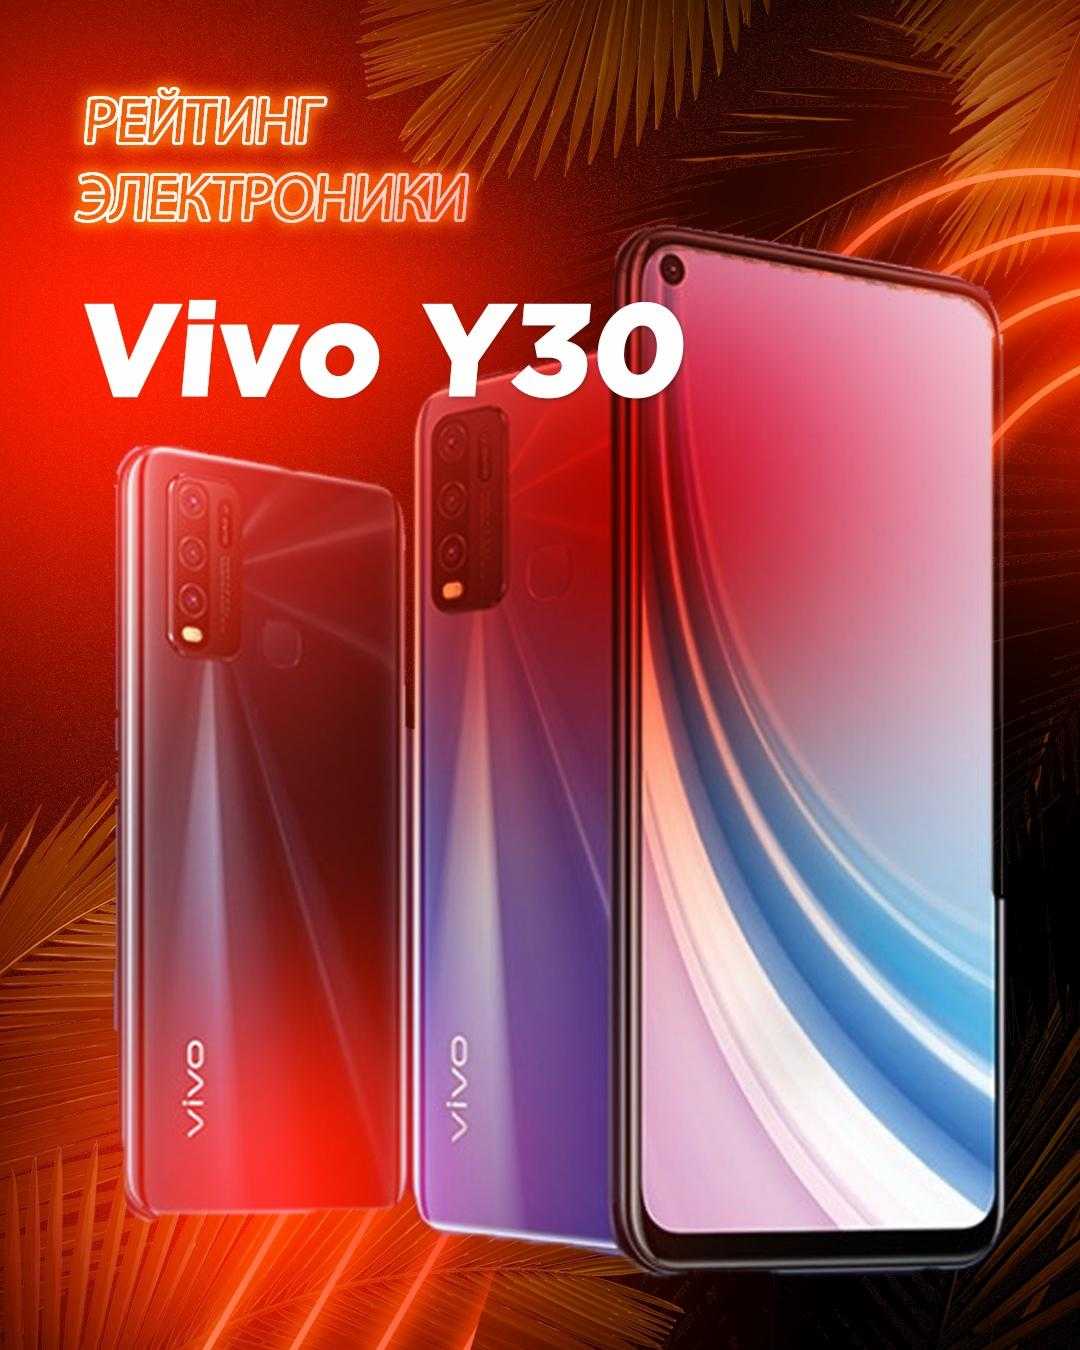 Представили торговой марки Vivo анонсировали новый смартфон средней ценовой категории который пополнил линейку X50 Новинка будет стоить около 480 долларов в штатах